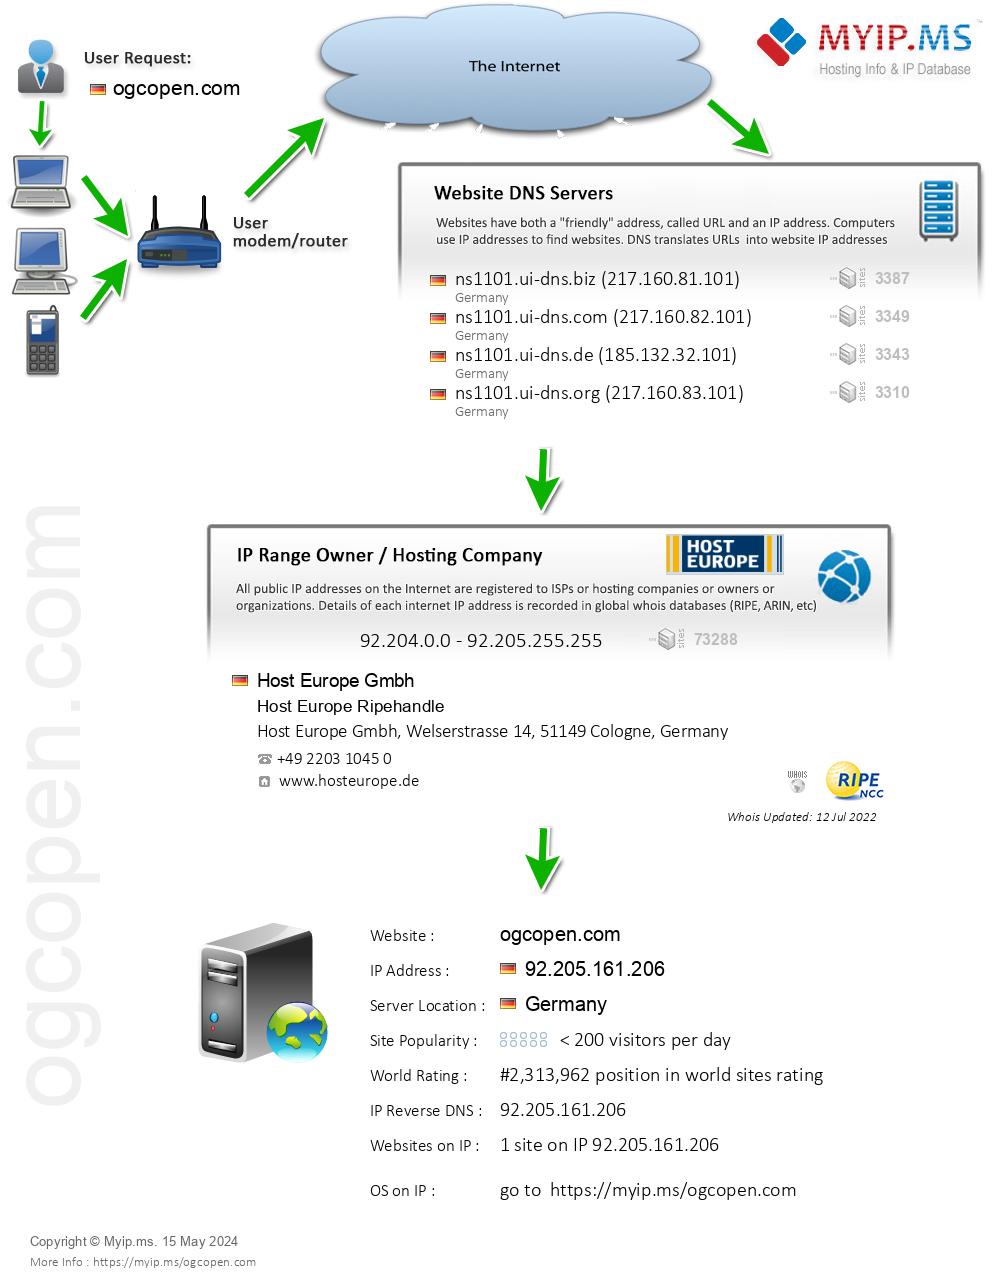 Ogcopen.com - Website Hosting Visual IP Diagram